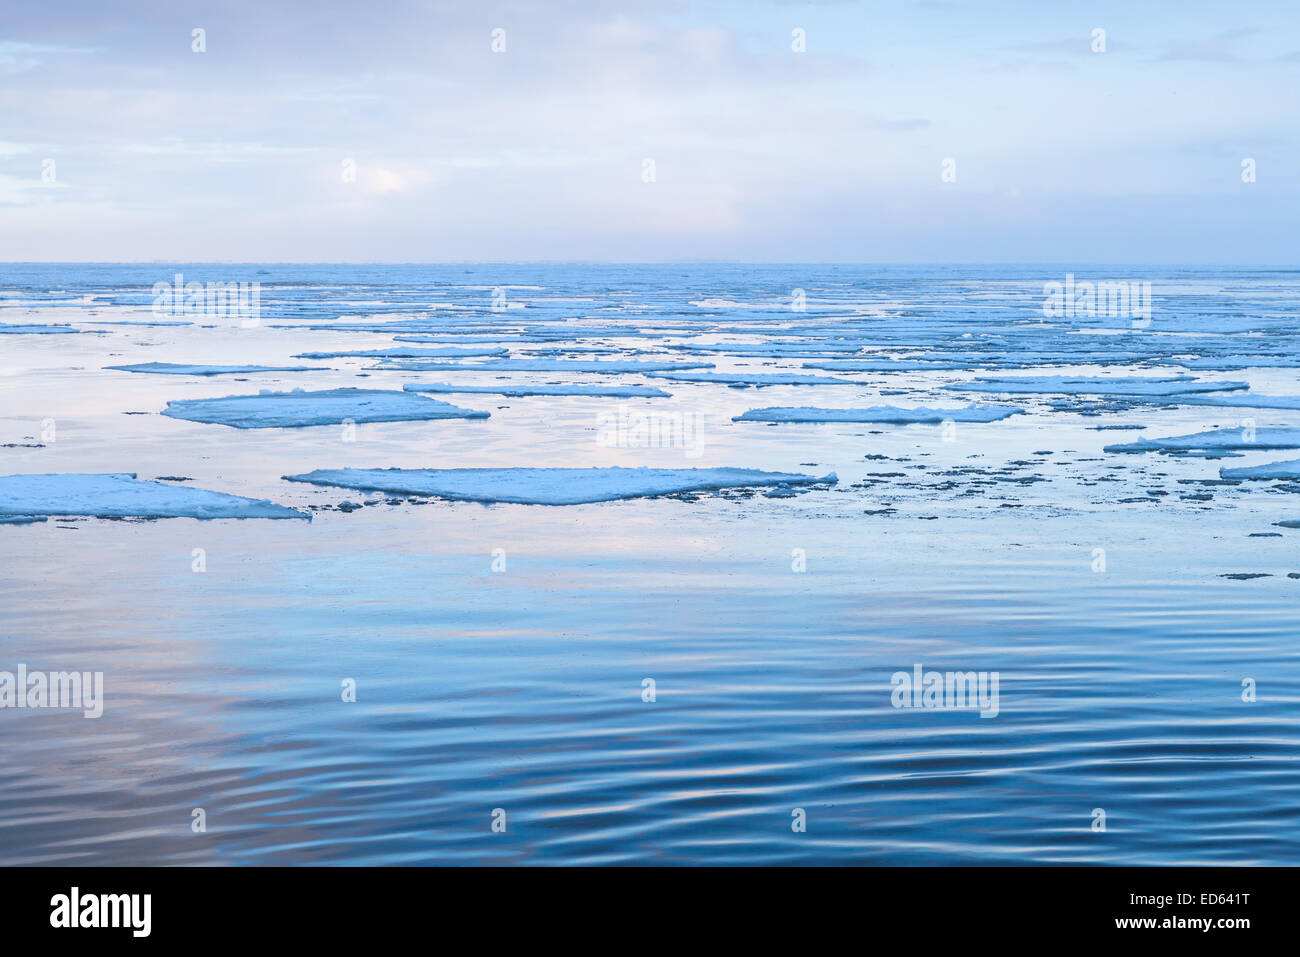 Paysage côtier d'hiver avec de gros fragments de glace flottant sur l'eau encore froide. Golfe de Finlande, Russie Banque D'Images